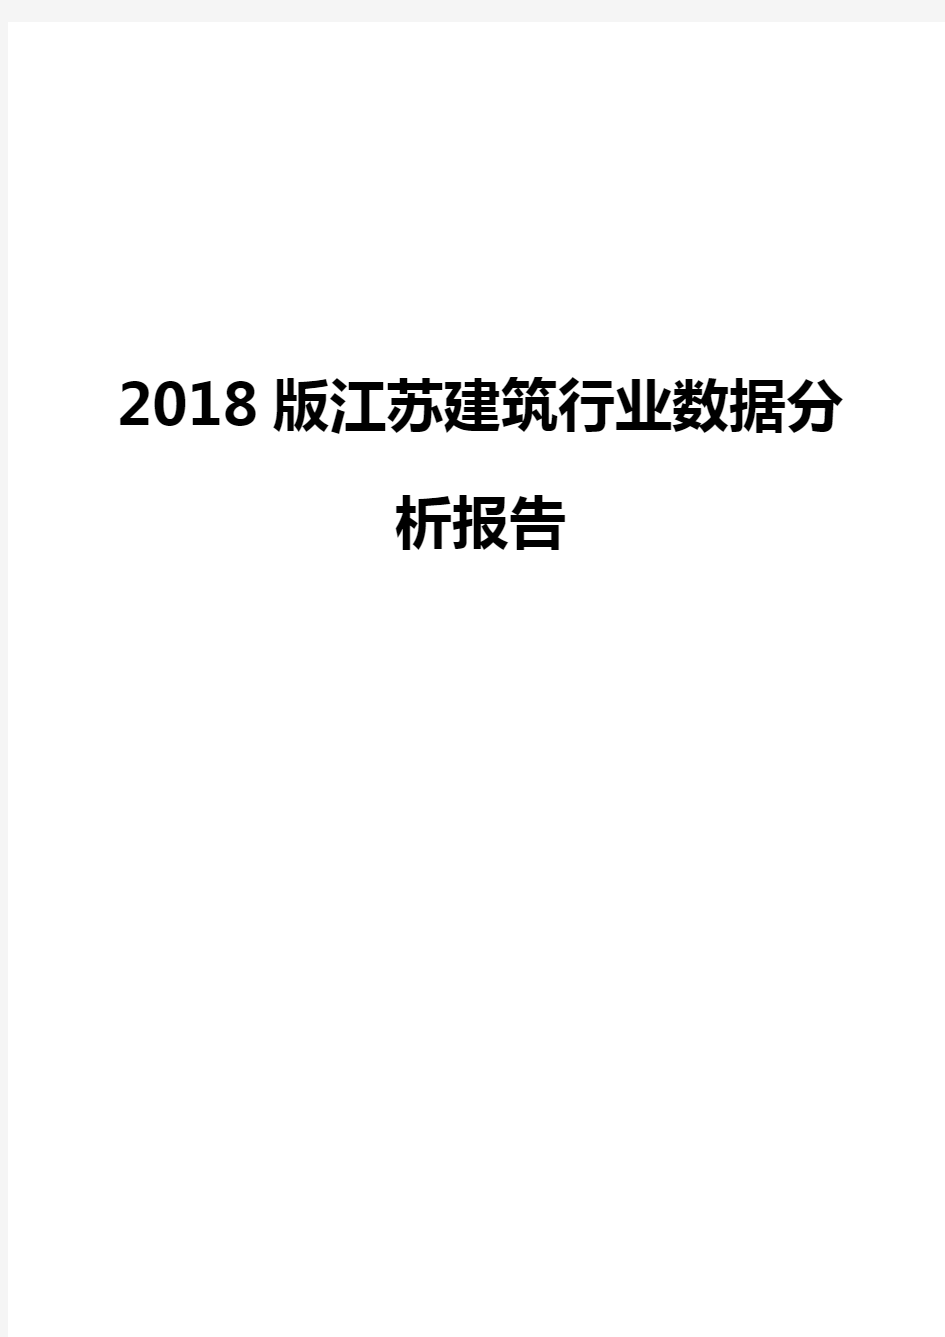 2018版江苏建筑行业数据分析报告